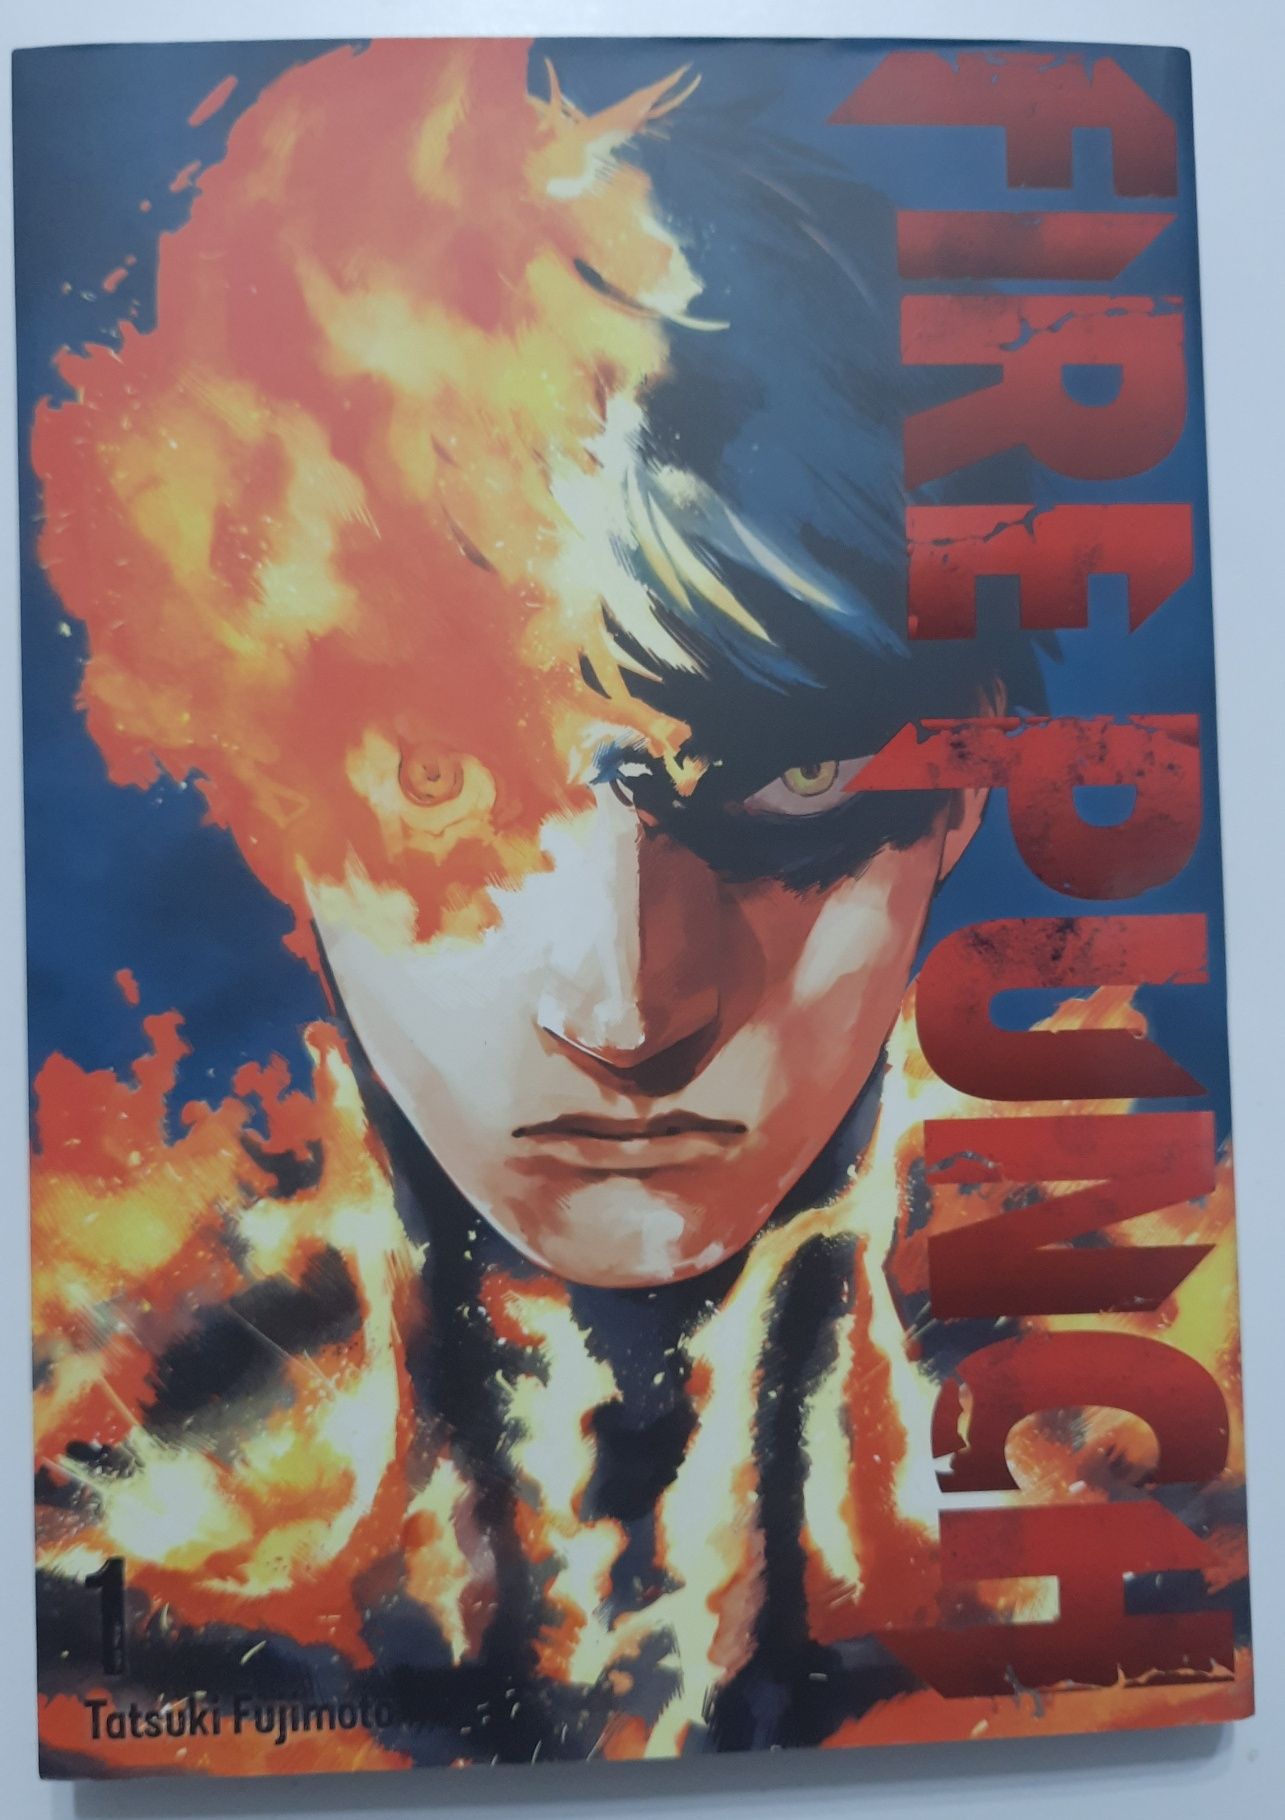 Manga "FIRE PUNCH" Tatsuki Fujimoto